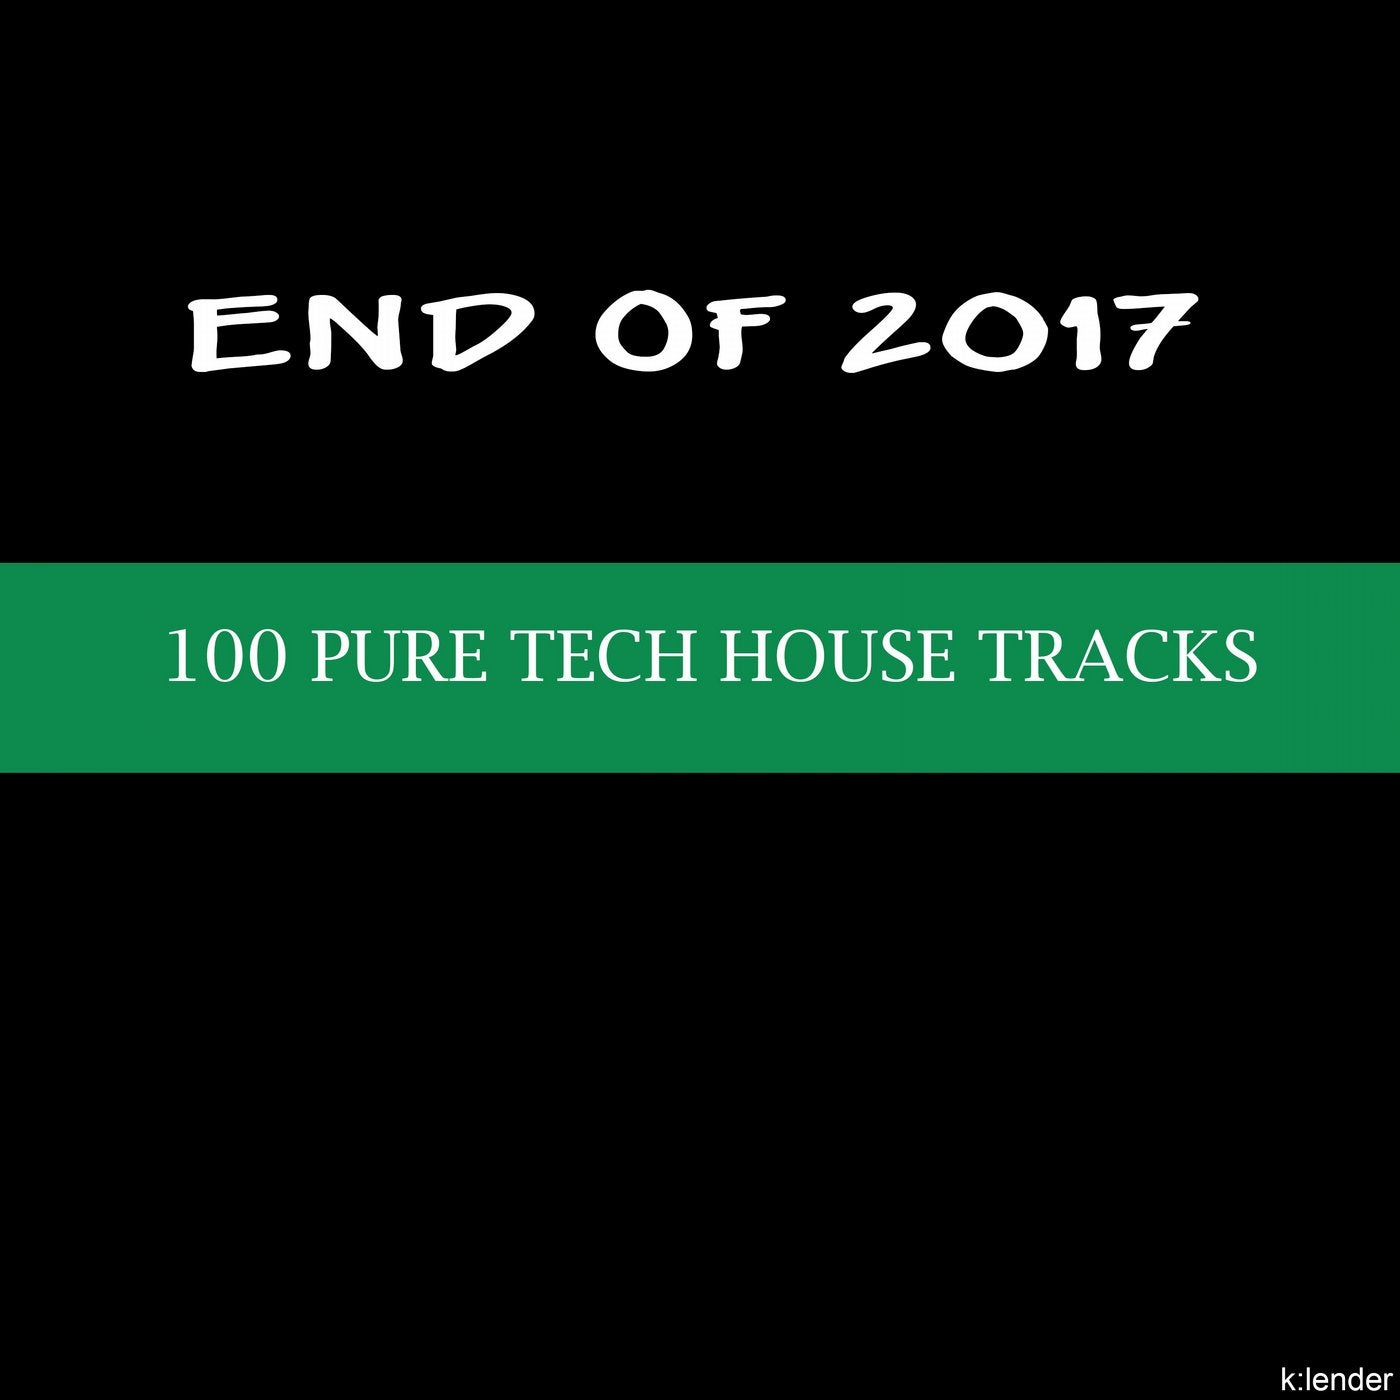 End of 2017: 100 Pure Tech House Tracks